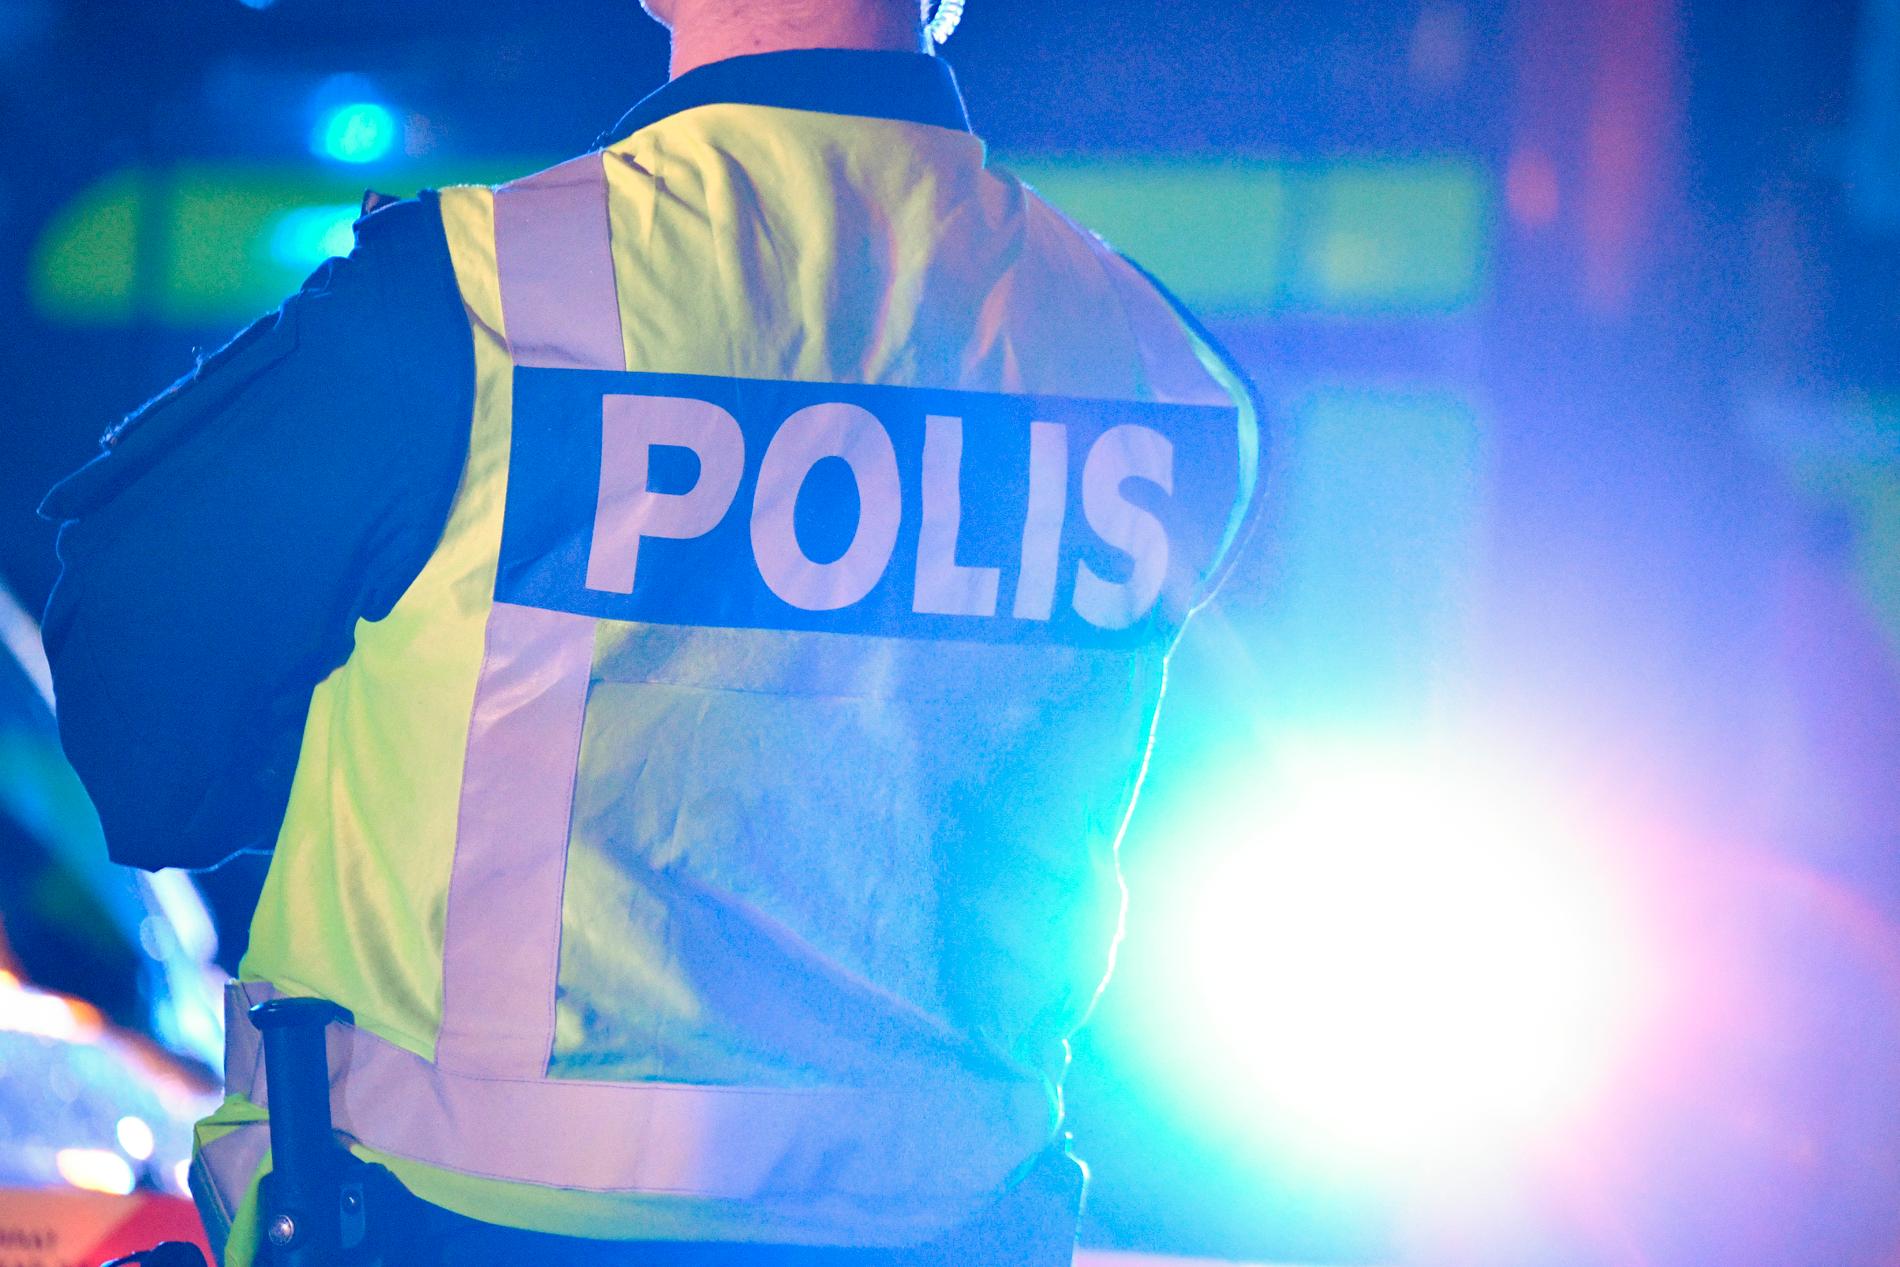 Totalt anmäldes cirka 1,54 miljoner brott hos polisen, Åklagarmyndigheten, Ekobrottsmyndigheten och andra brottsutredande myndigheter under 2019. Arkivbild.